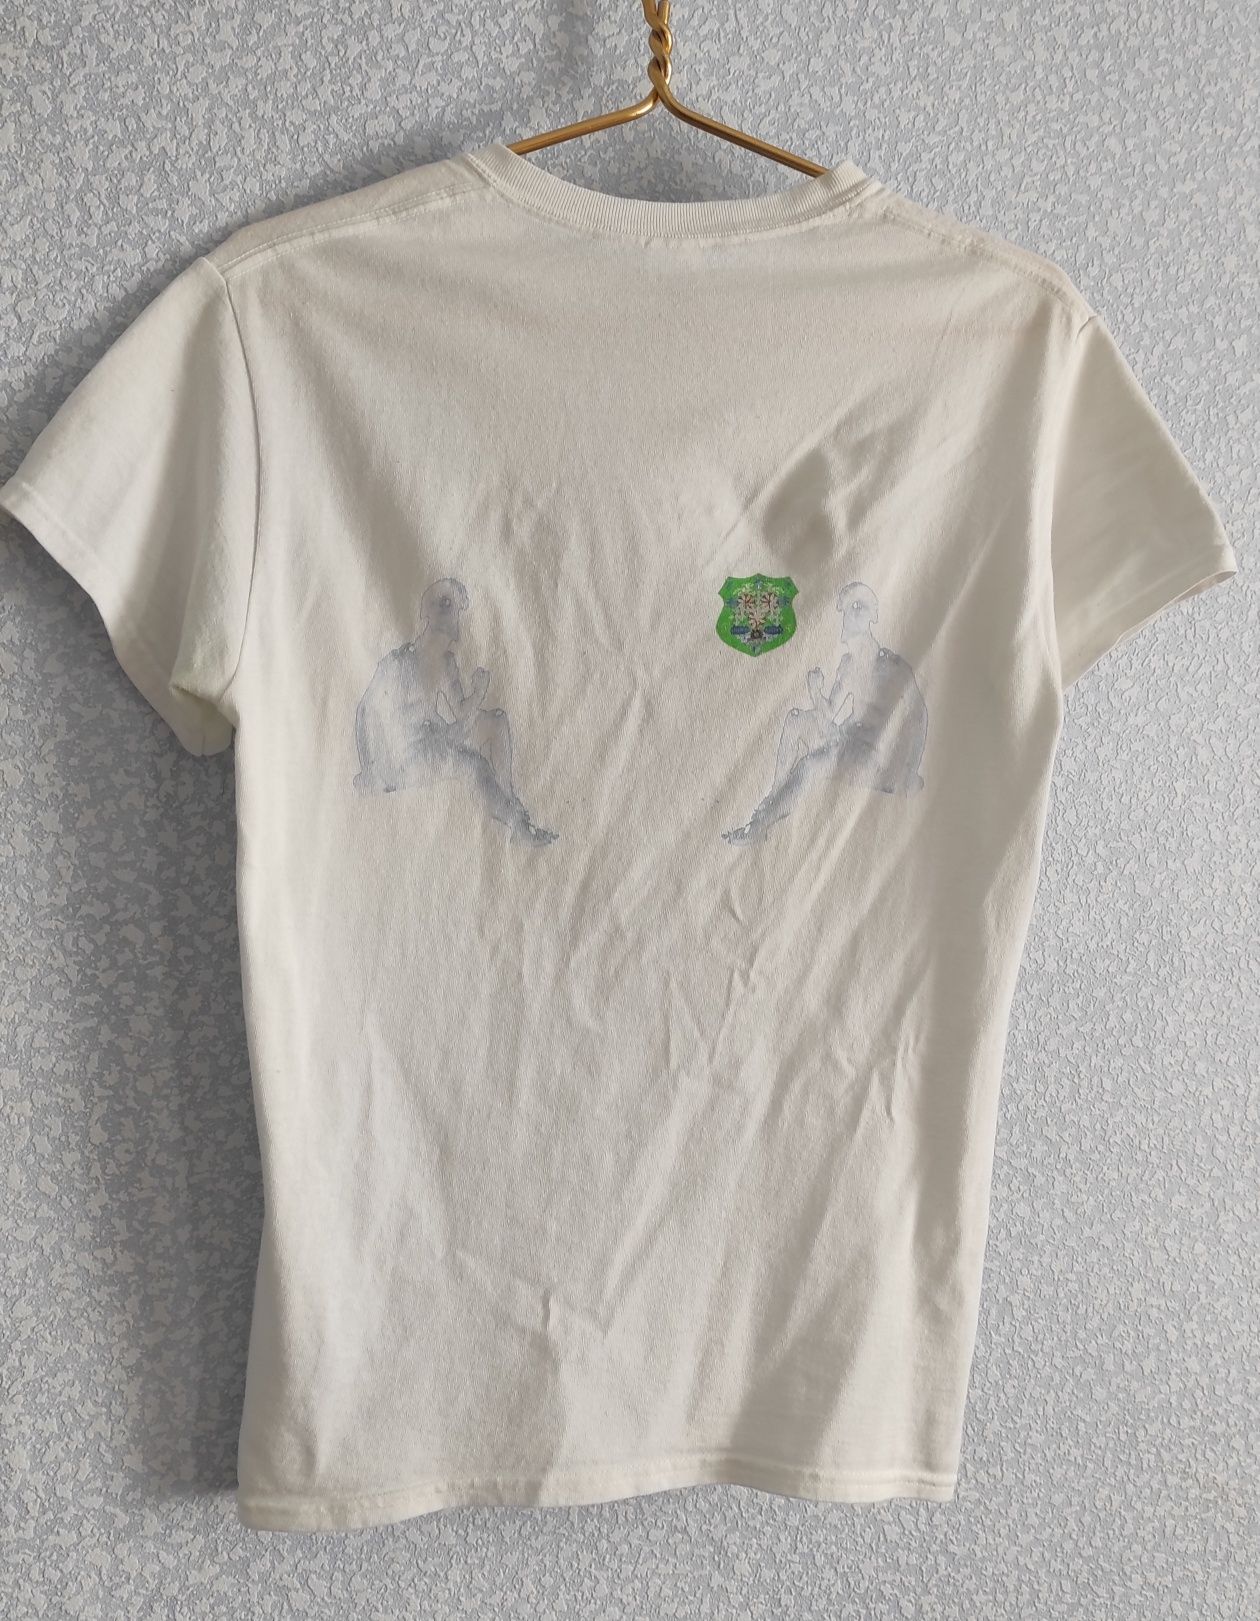 Мерч футболка 7moon (y2k, sk8, opium, drill)